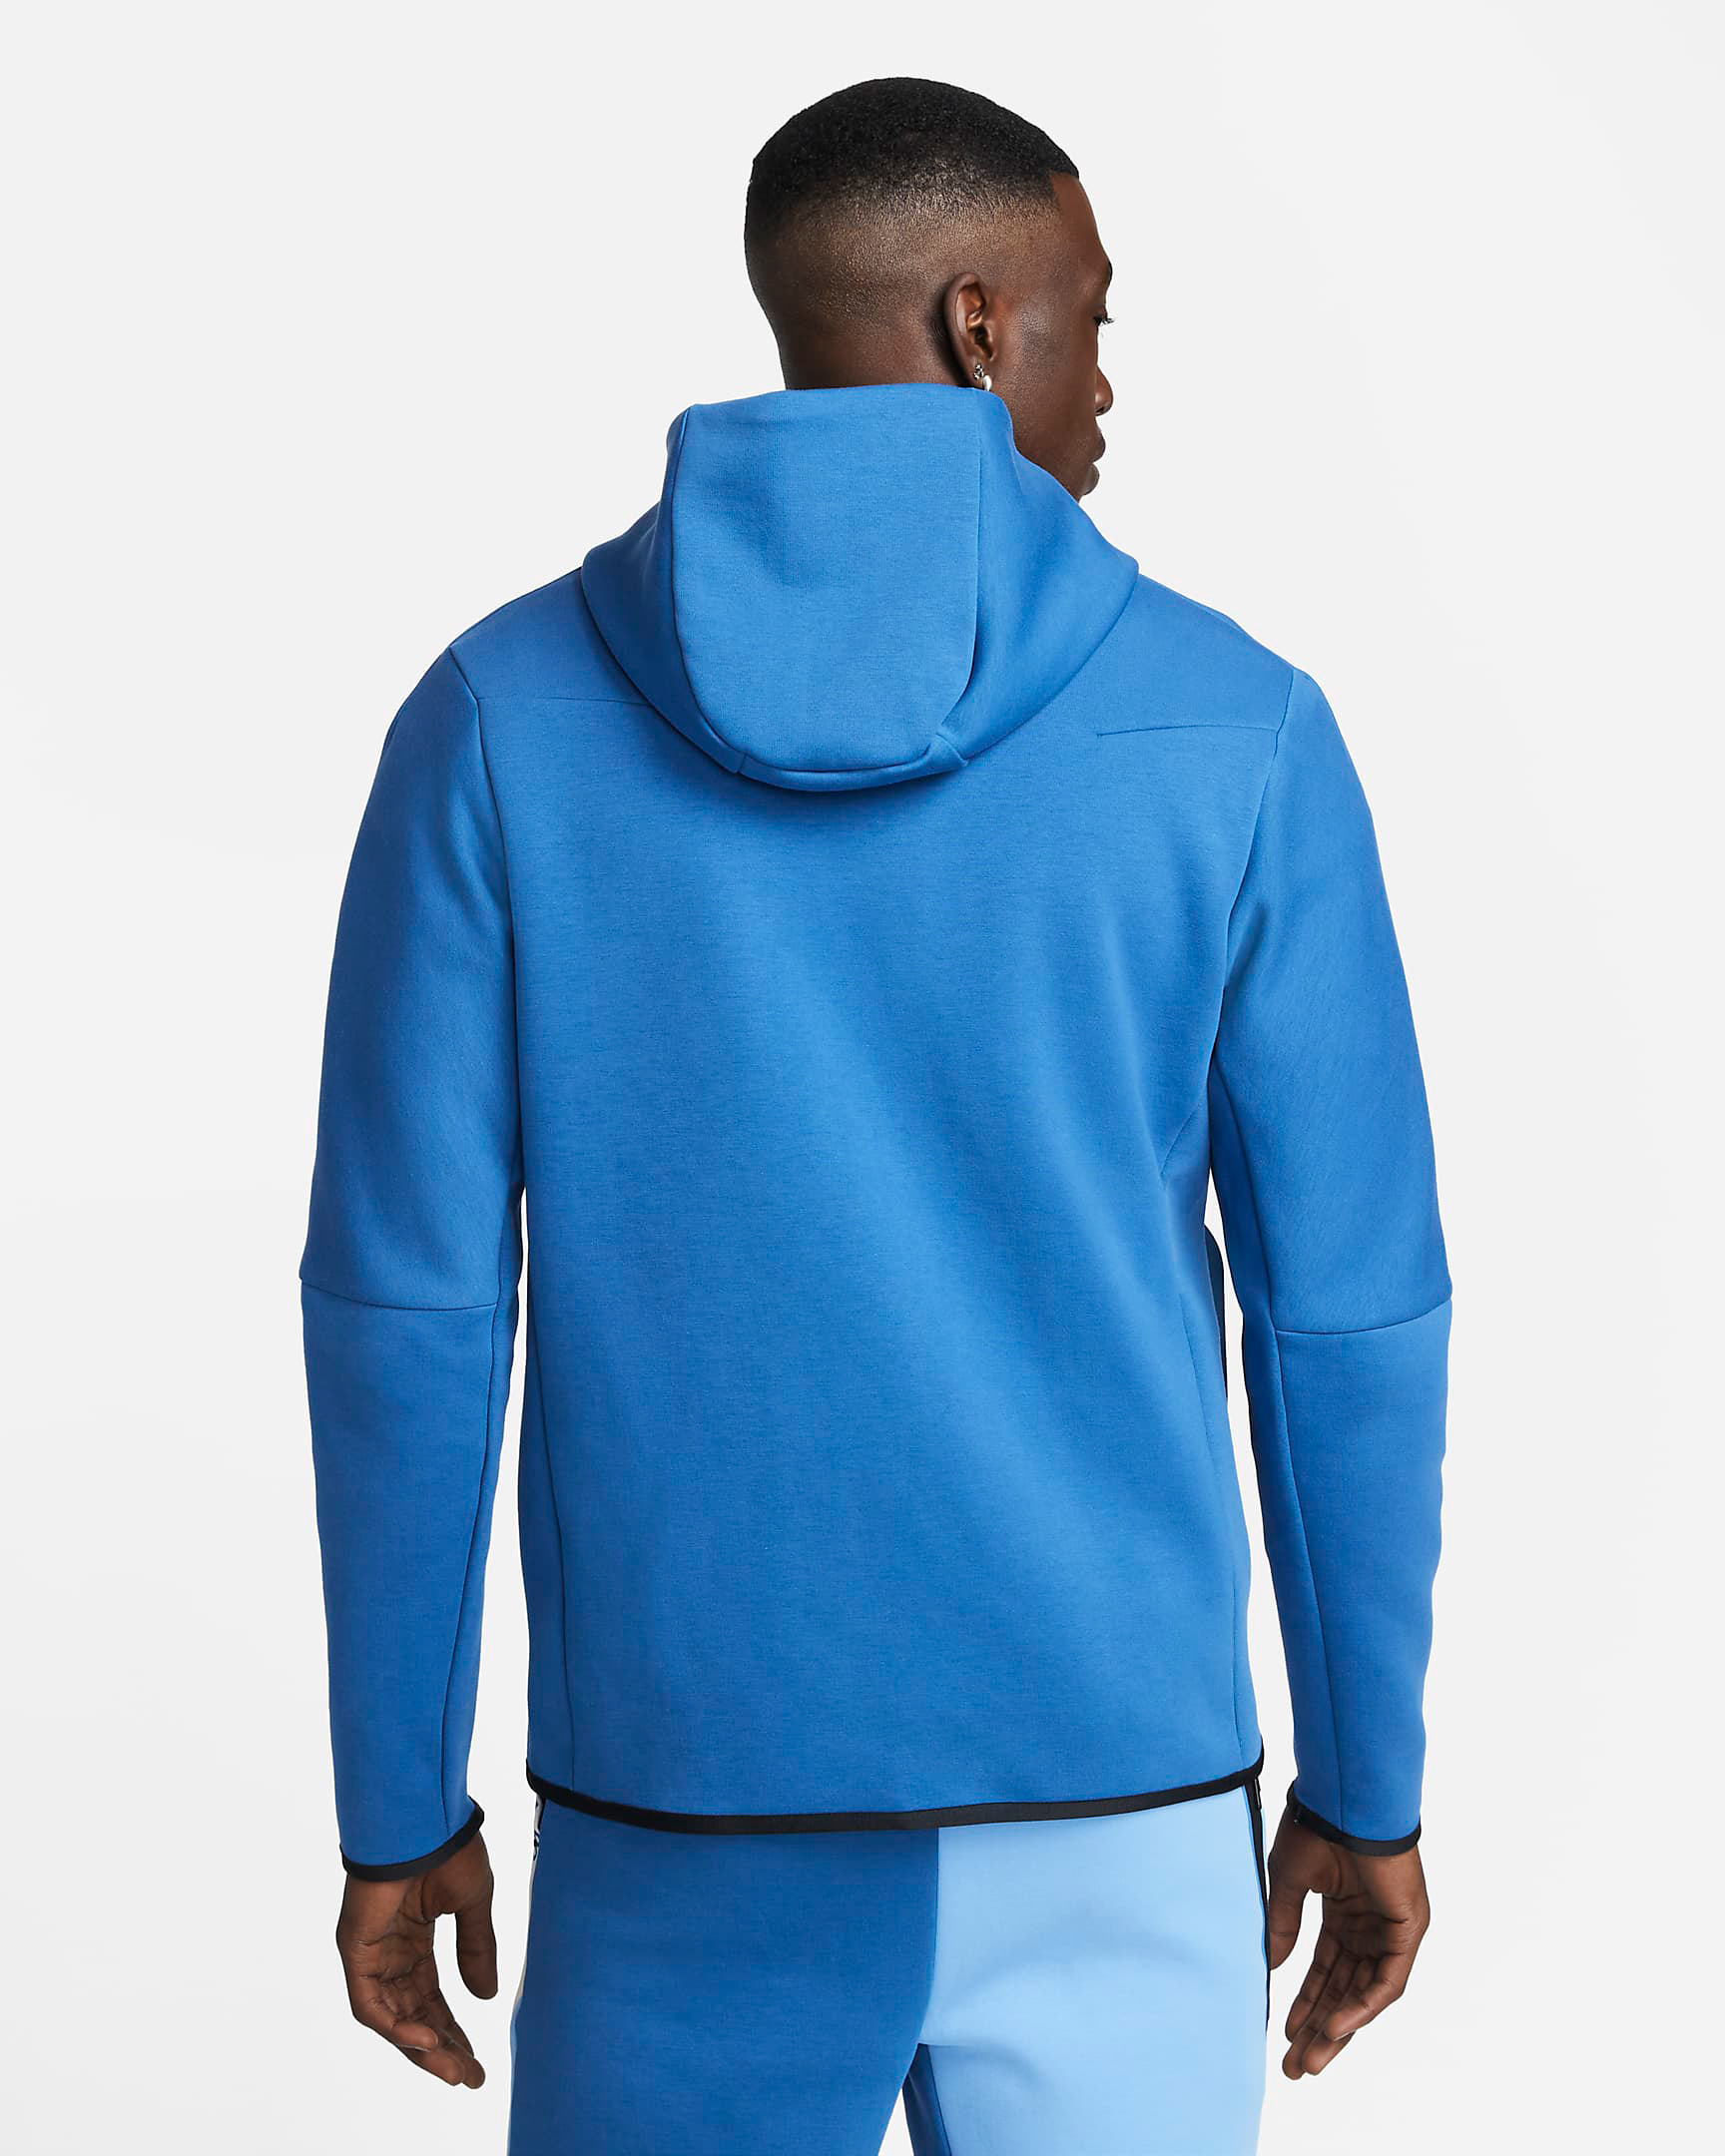 nike-tech-fleece-hoodie-dark-marina-blue-2